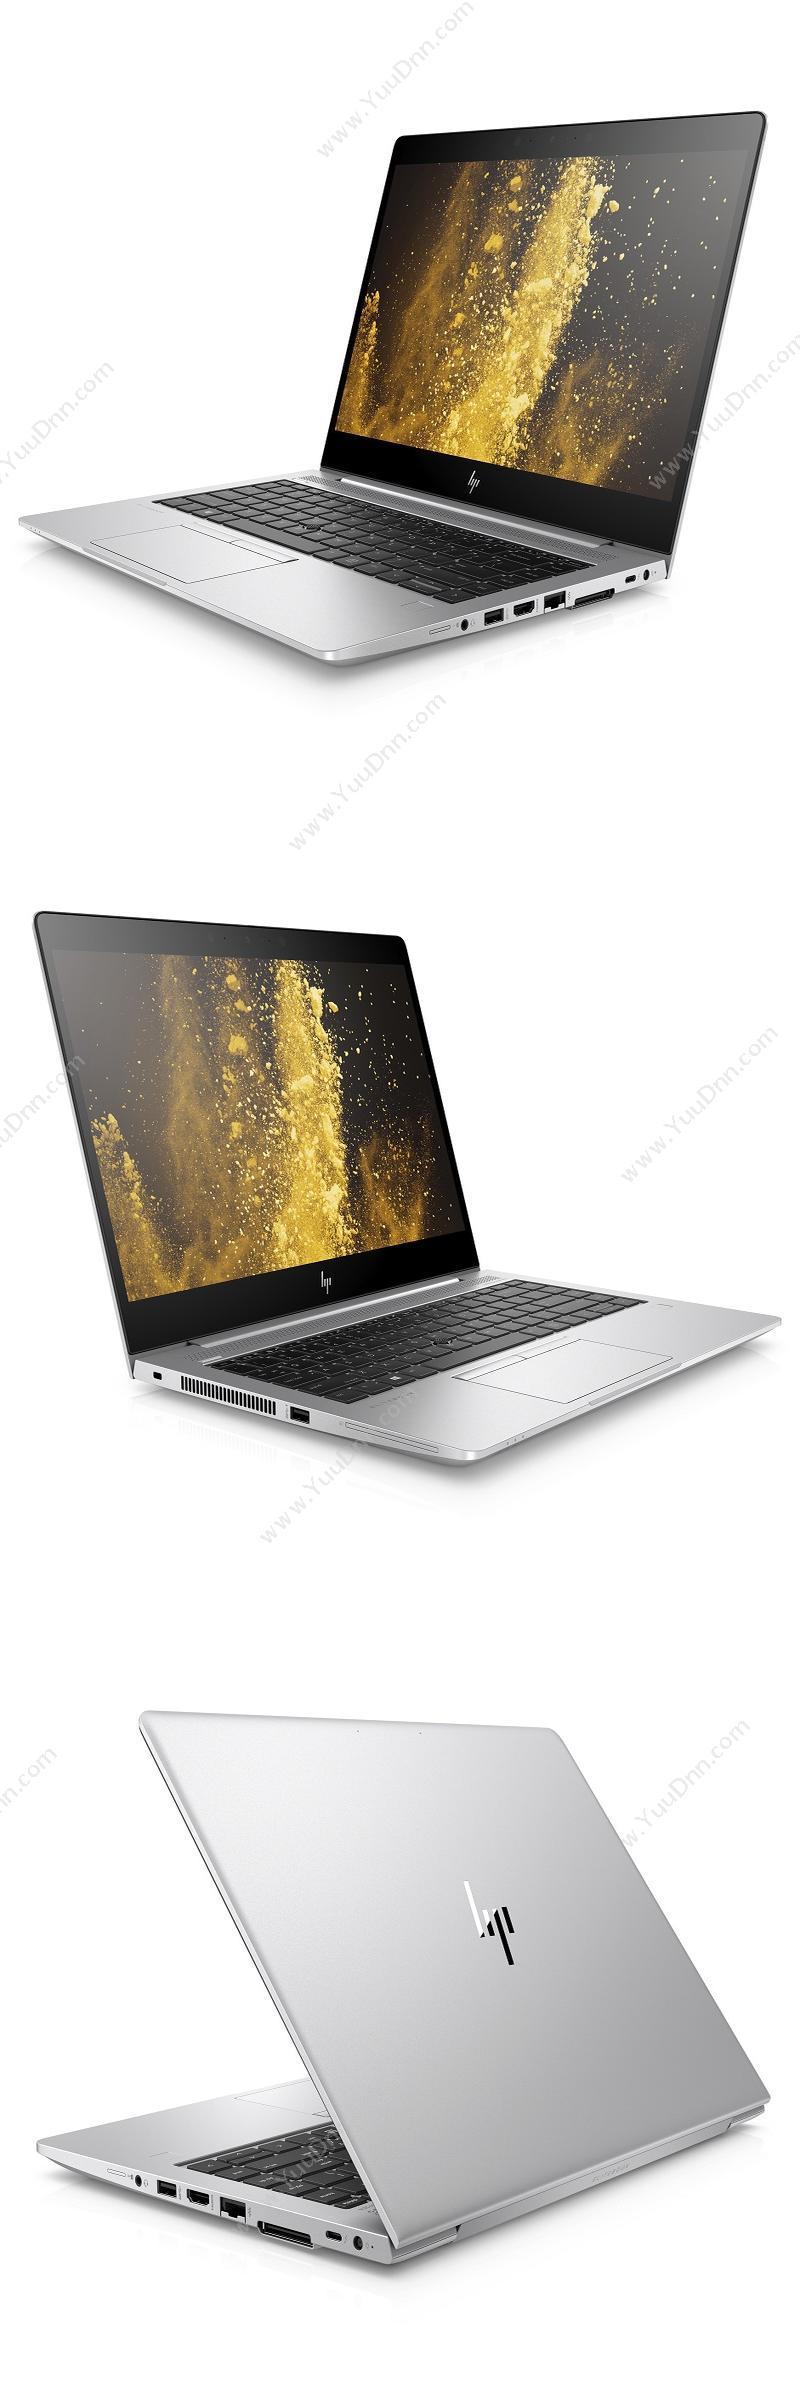 惠普 HP HP EliteBook 840 G6-3402500205A 笔记本